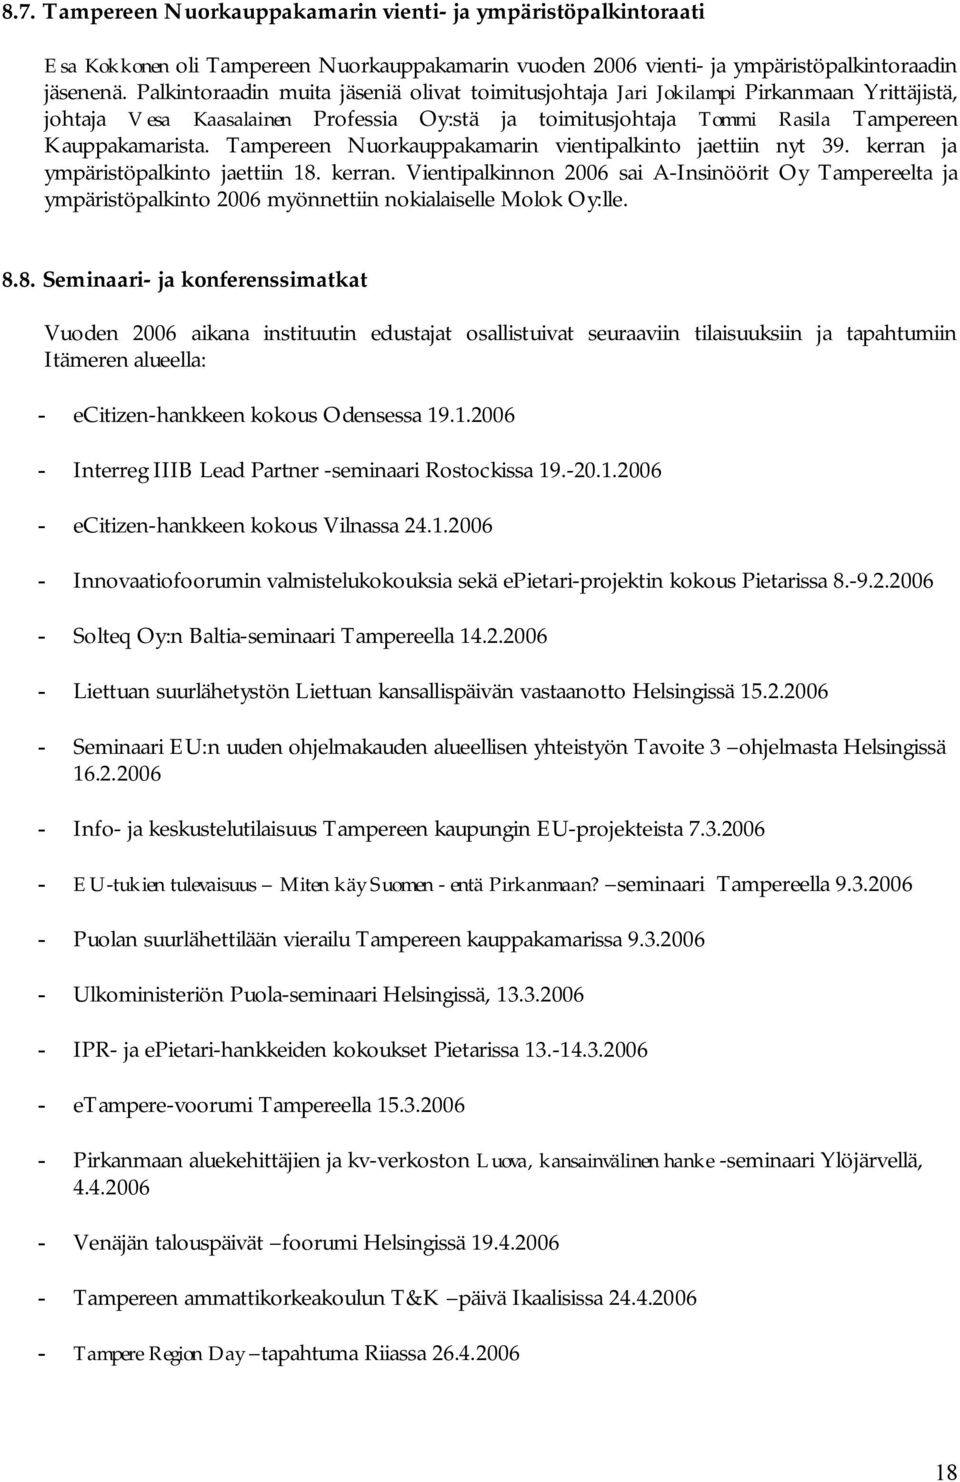 Tampereen Nuorkauppakamarin vientipalkinto jaettiin nyt 39. kerran ja ympäristöpalkinto jaettiin 18. kerran. Vientipalkinnon 2006 sai A Insinöörit Oy Tampereelta ja ympäristöpalkinto 2006 myönnettiin nokialaiselle Molok Oy:lle.